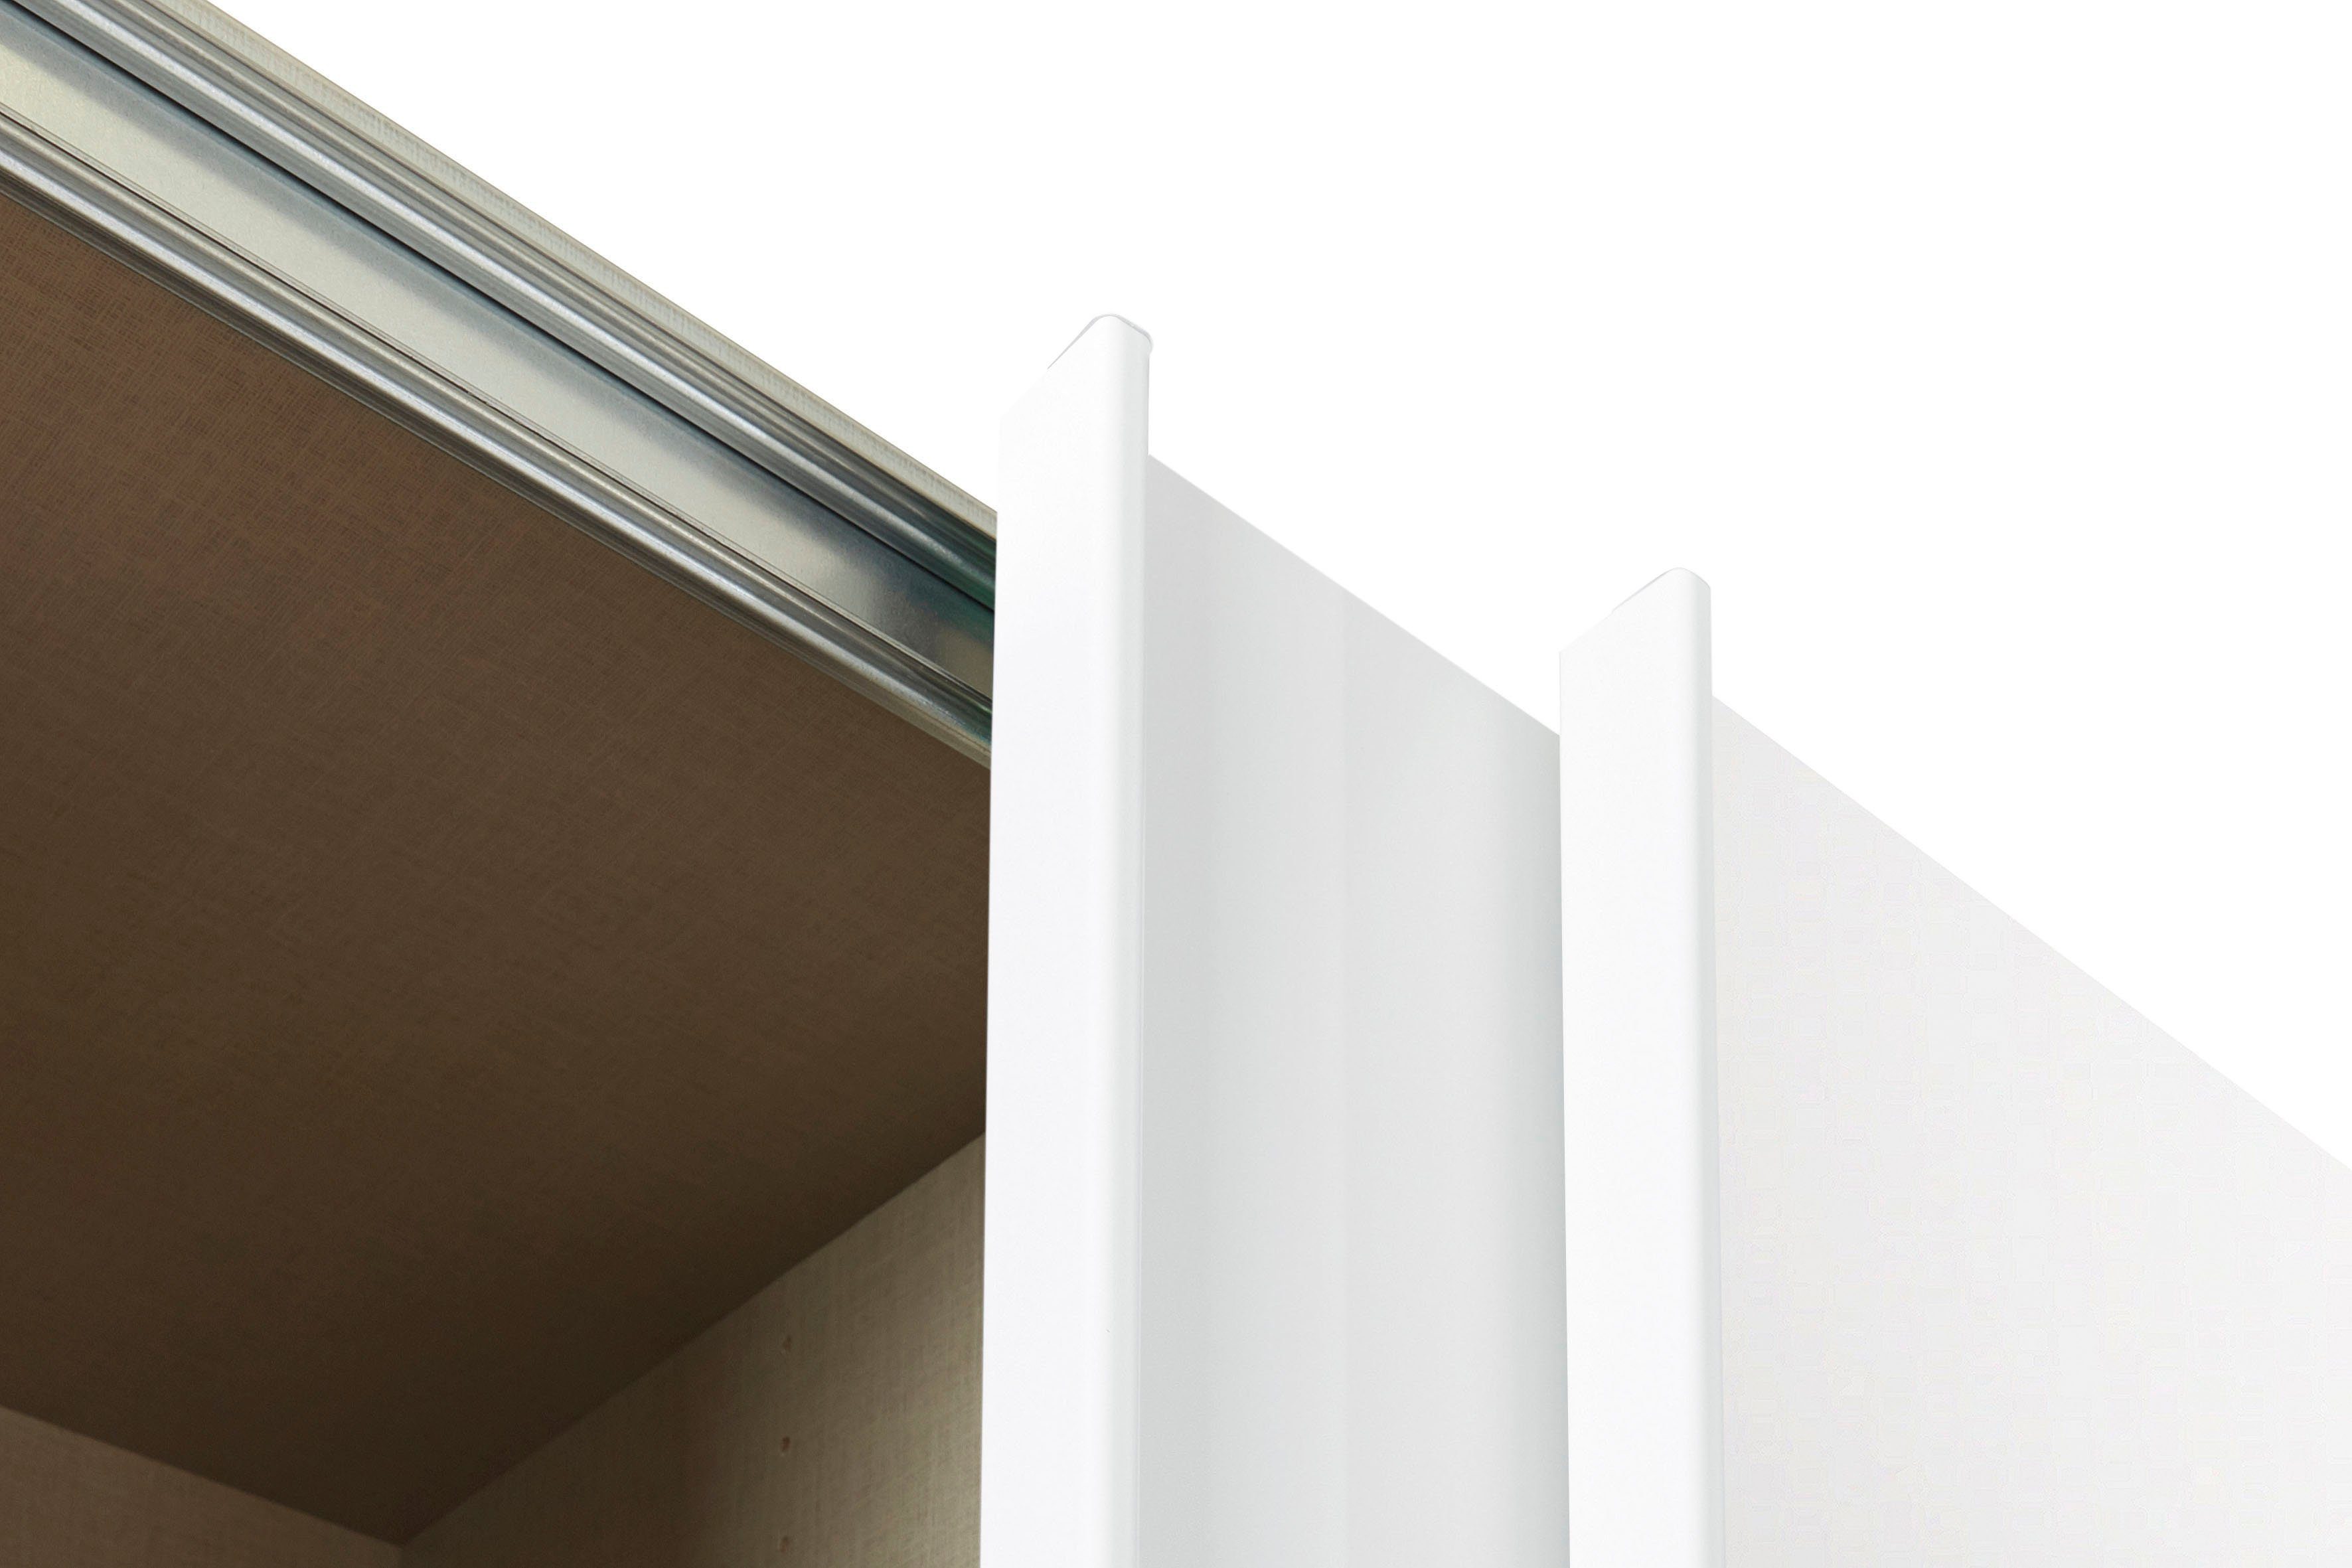 rauch Wäscheeinteilung Weiß/Hochglanz Schwebetürenschrank Oteli Weiß 3 Innenschubladen Böden mit zusätzlichen sowie inkl.